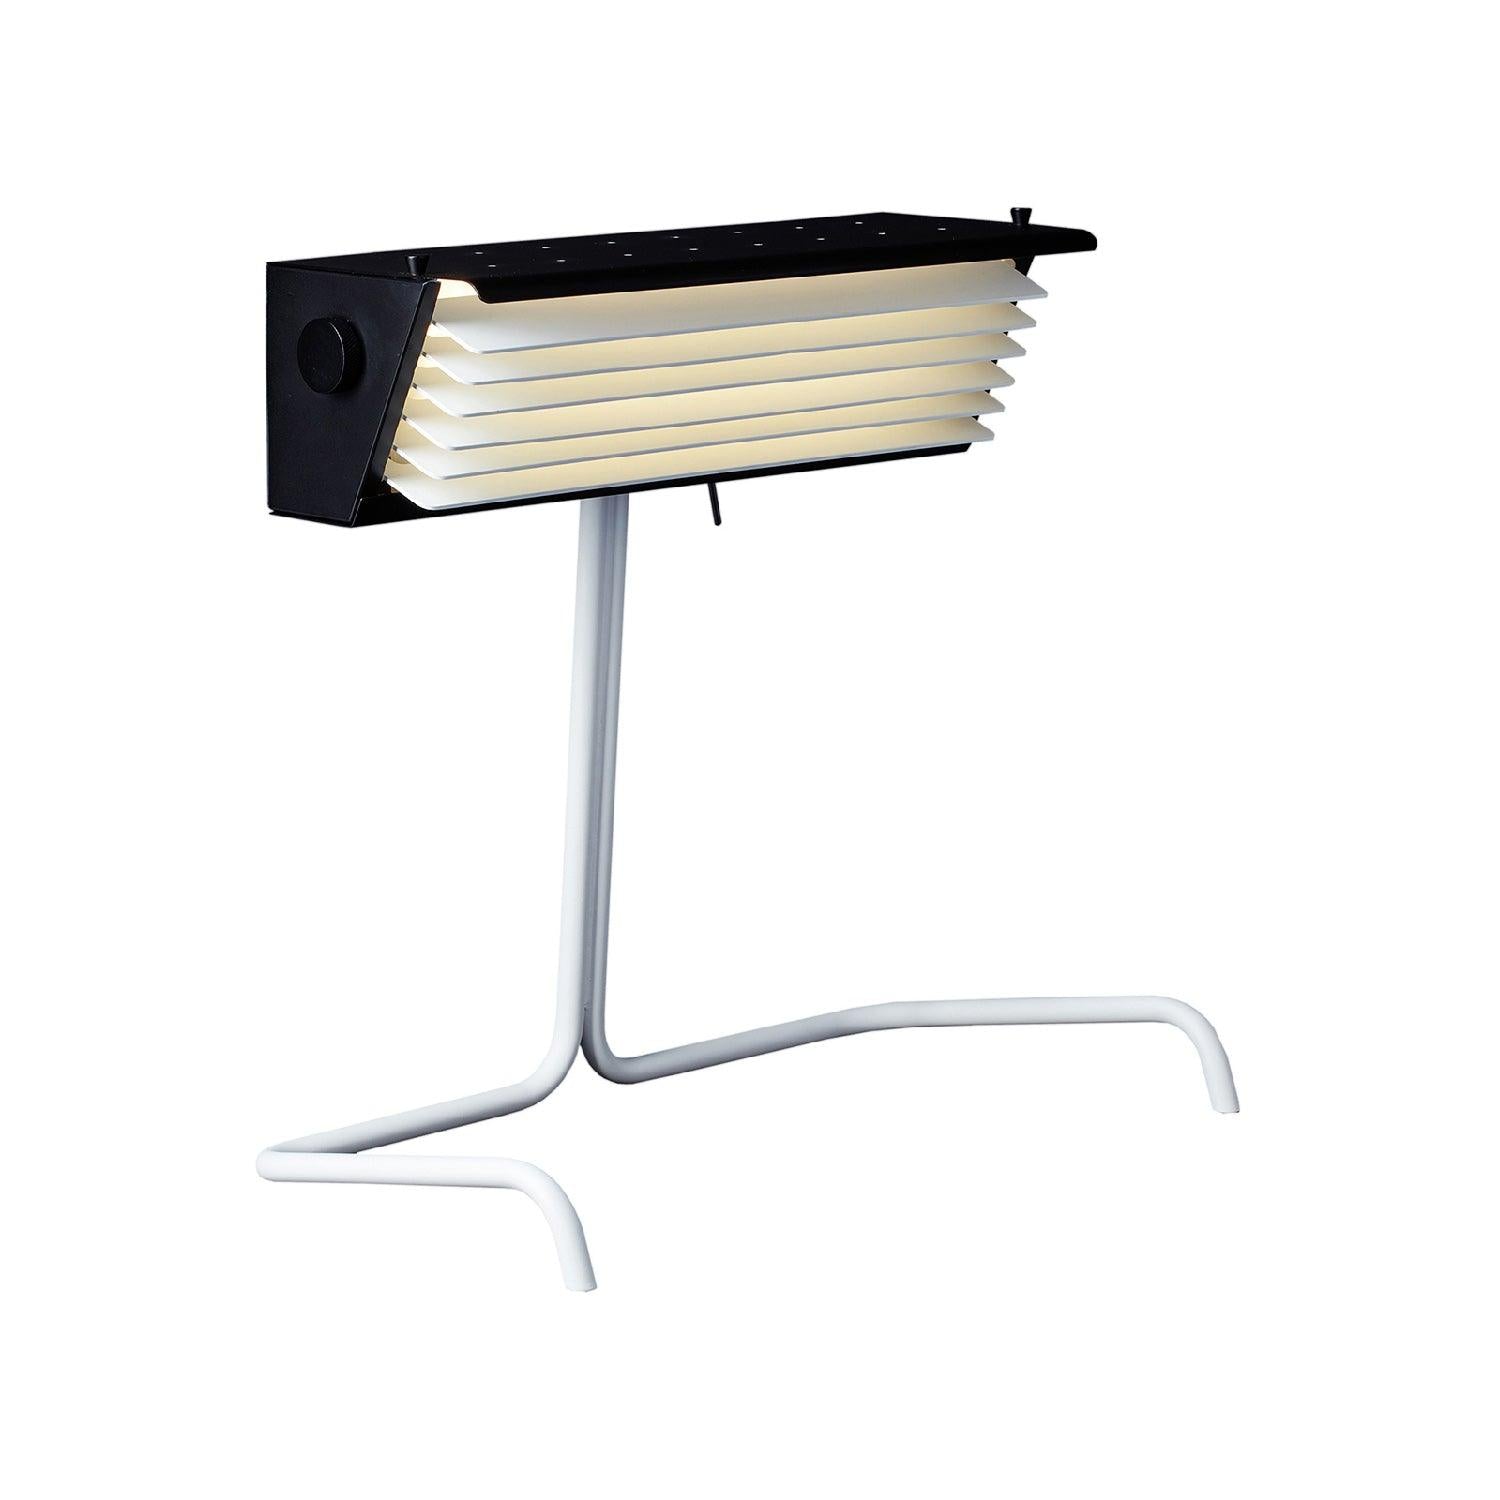 Image de : Lampe Biny Table présenté par 37+ Design.